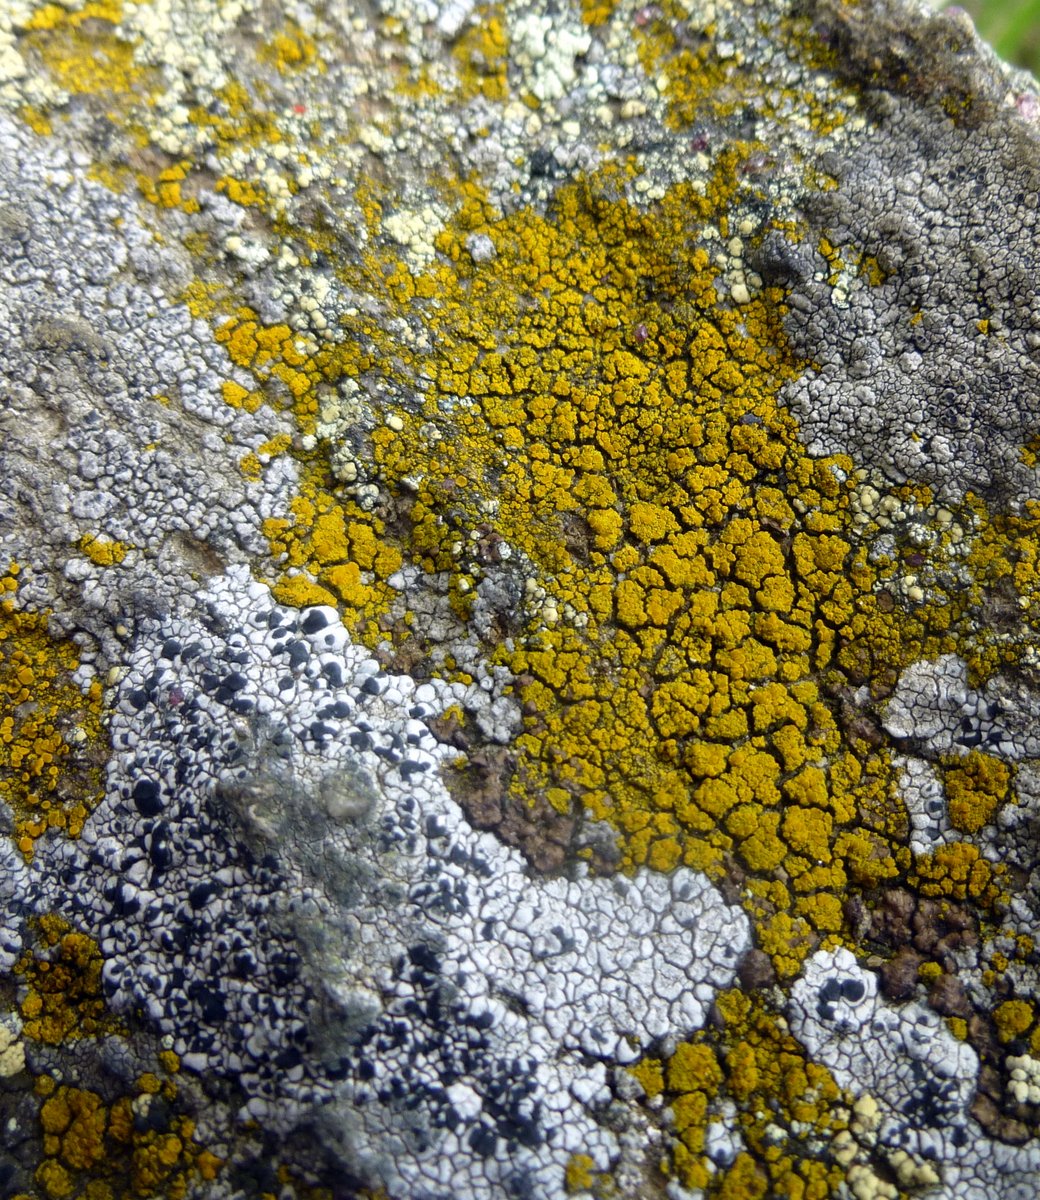 10. Lichens